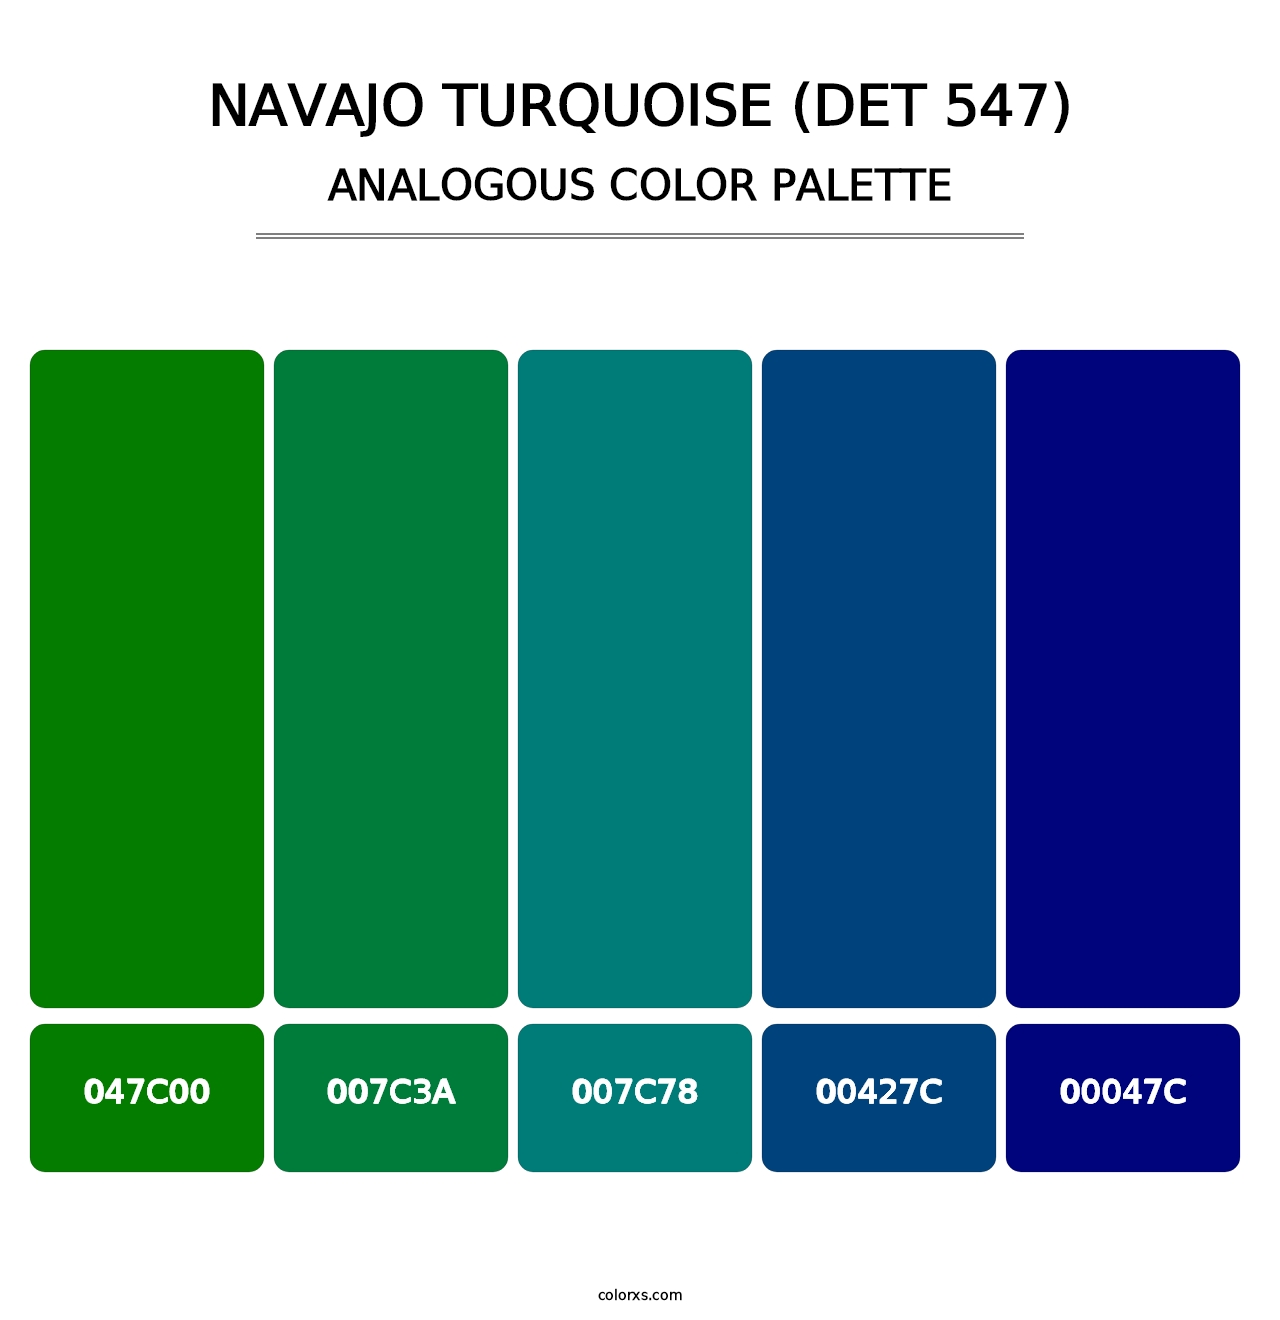 Navajo Turquoise (DET 547) - Analogous Color Palette